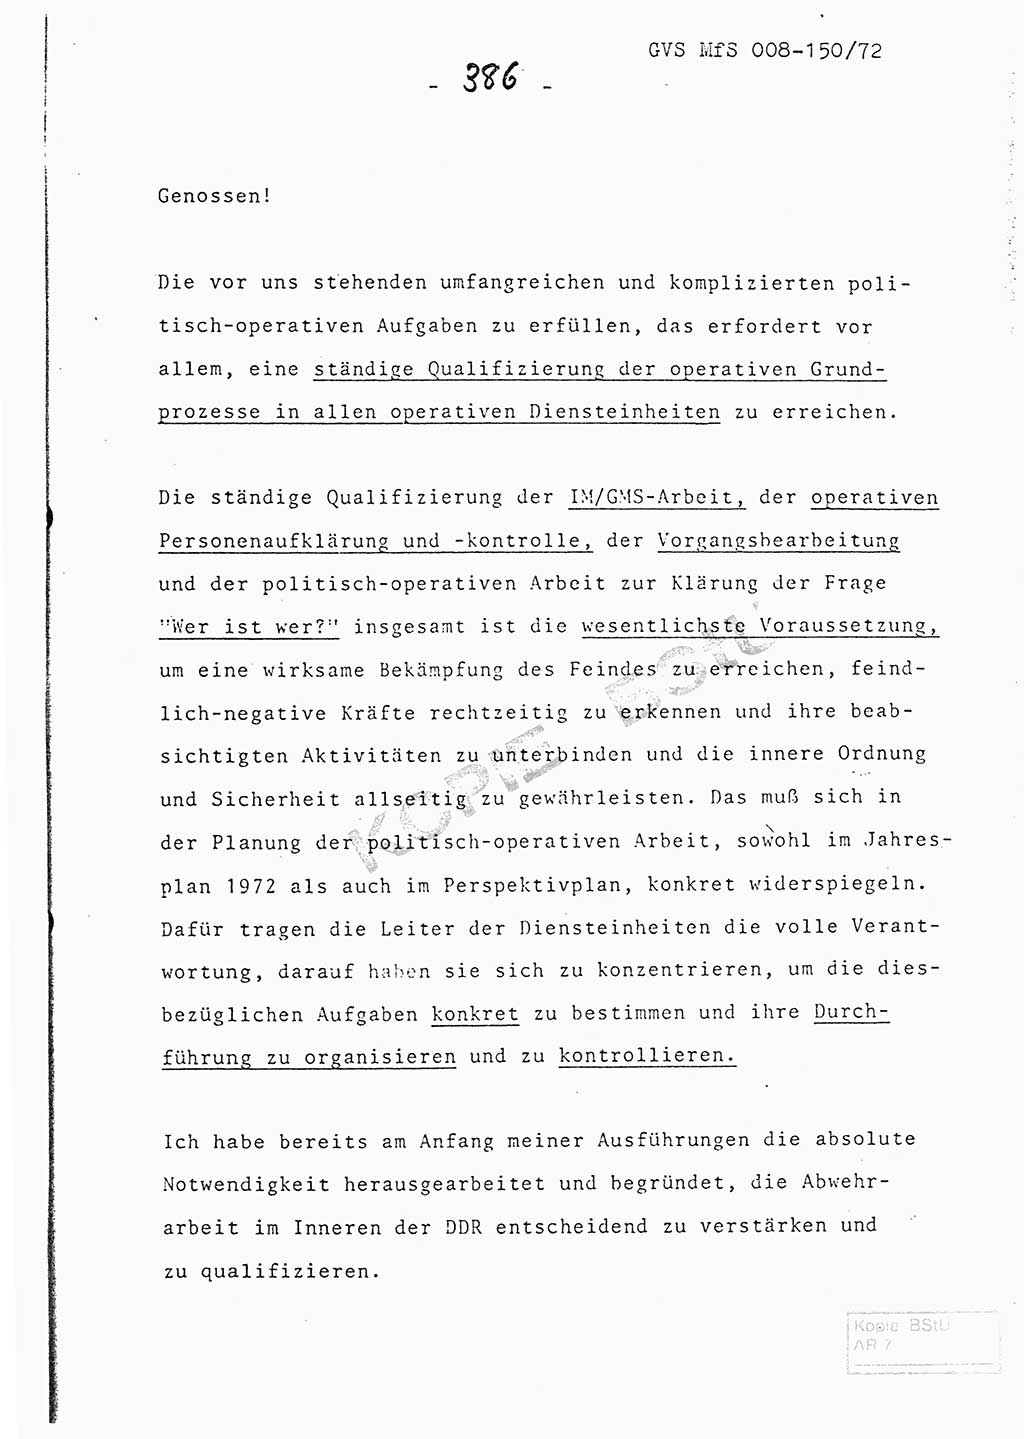 Referat (Entwurf) des Genossen Minister (Generaloberst Erich Mielke) auf der Dienstkonferenz 1972, Ministerium für Staatssicherheit (MfS) [Deutsche Demokratische Republik (DDR)], Der Minister, Geheime Verschlußsache (GVS) 008-150/72, Berlin 25.2.1972, Seite 386 (Ref. Entw. DK MfS DDR Min. GVS 008-150/72 1972, S. 386)